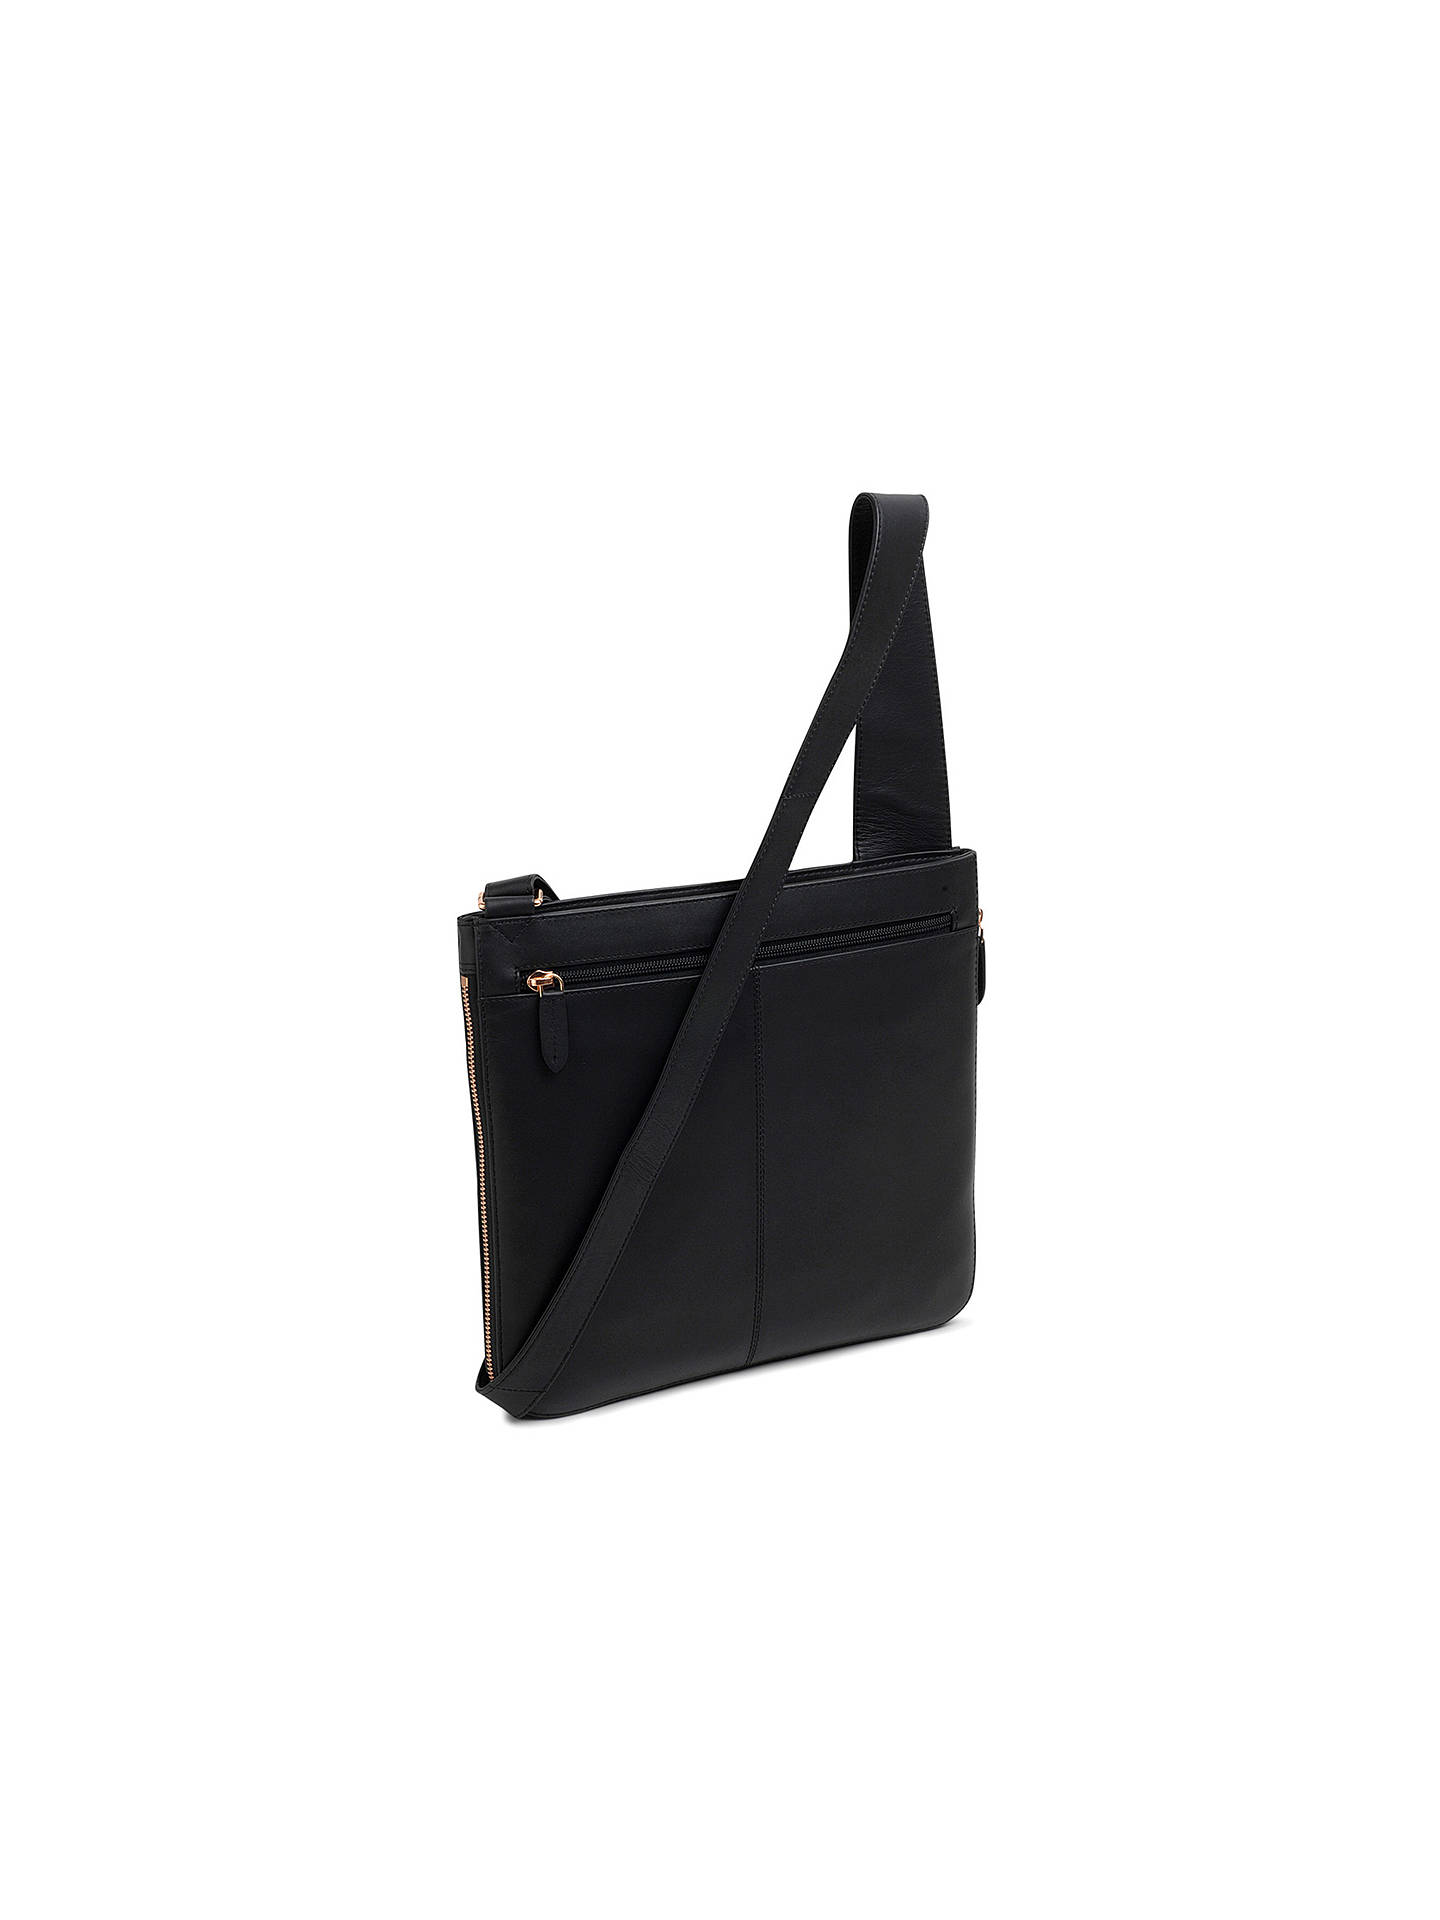 Radley Pocket Bag Leather Large Cross Body Bag, Black at John Lewis & Partners